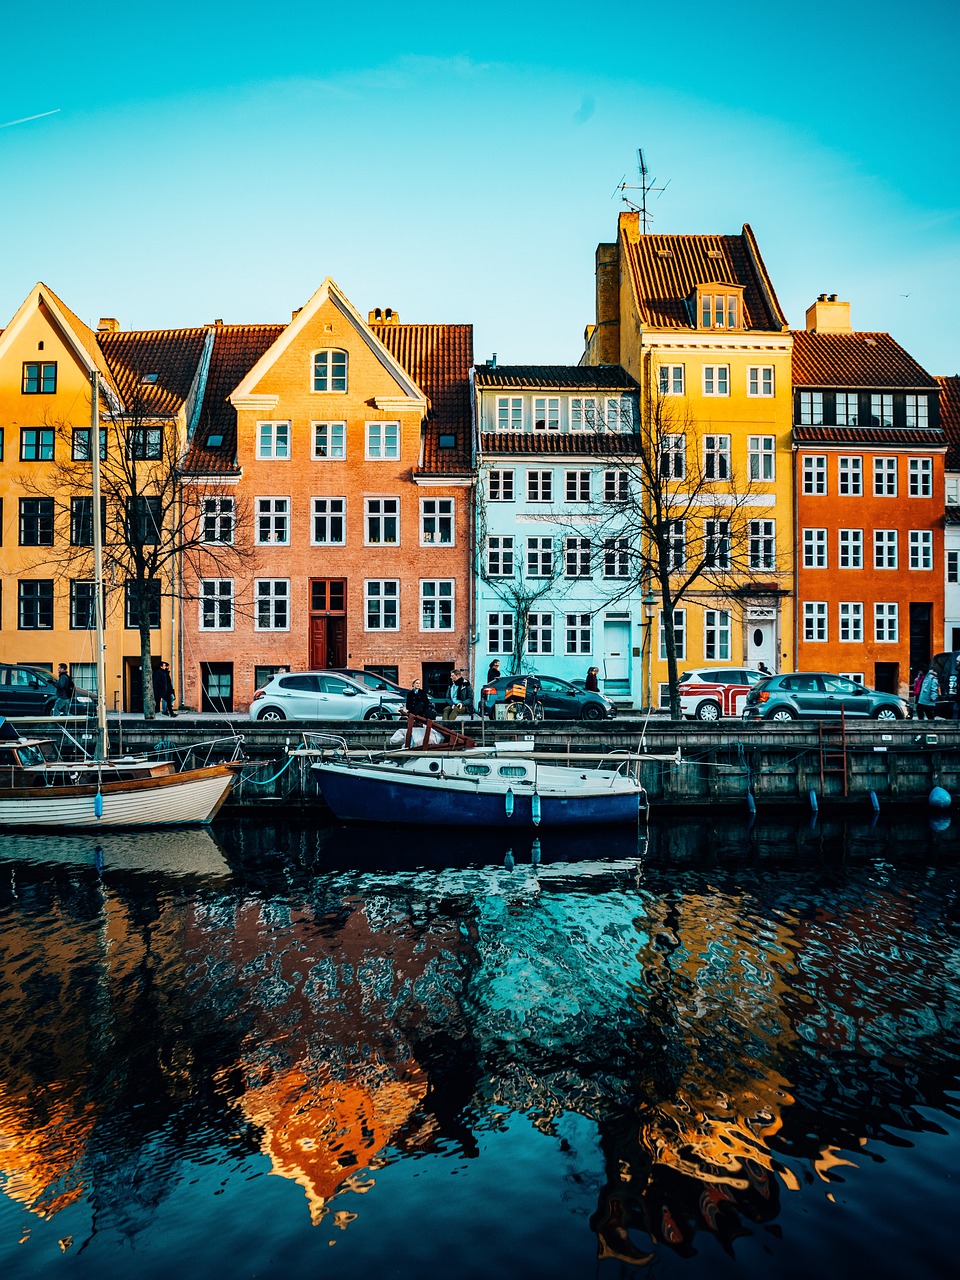 3-Day Adventure in Copenhagen